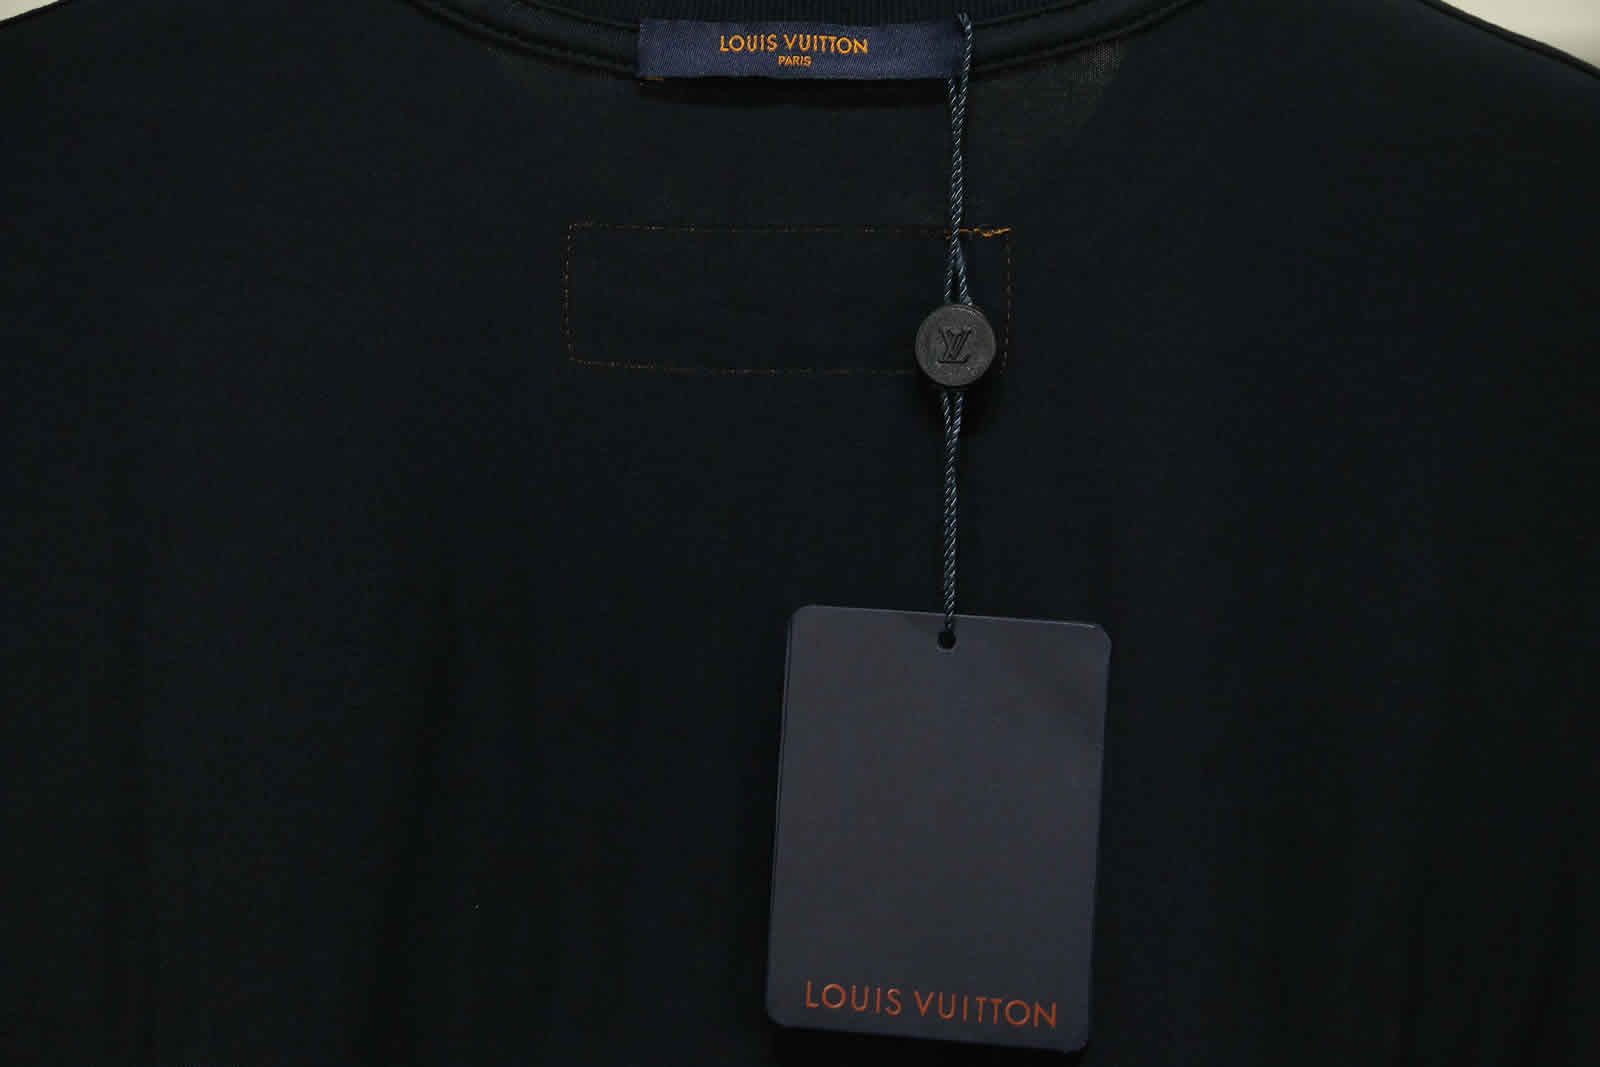 Louis Vuitton Catwalk T Shirt 2021 17 - www.kickbulk.org